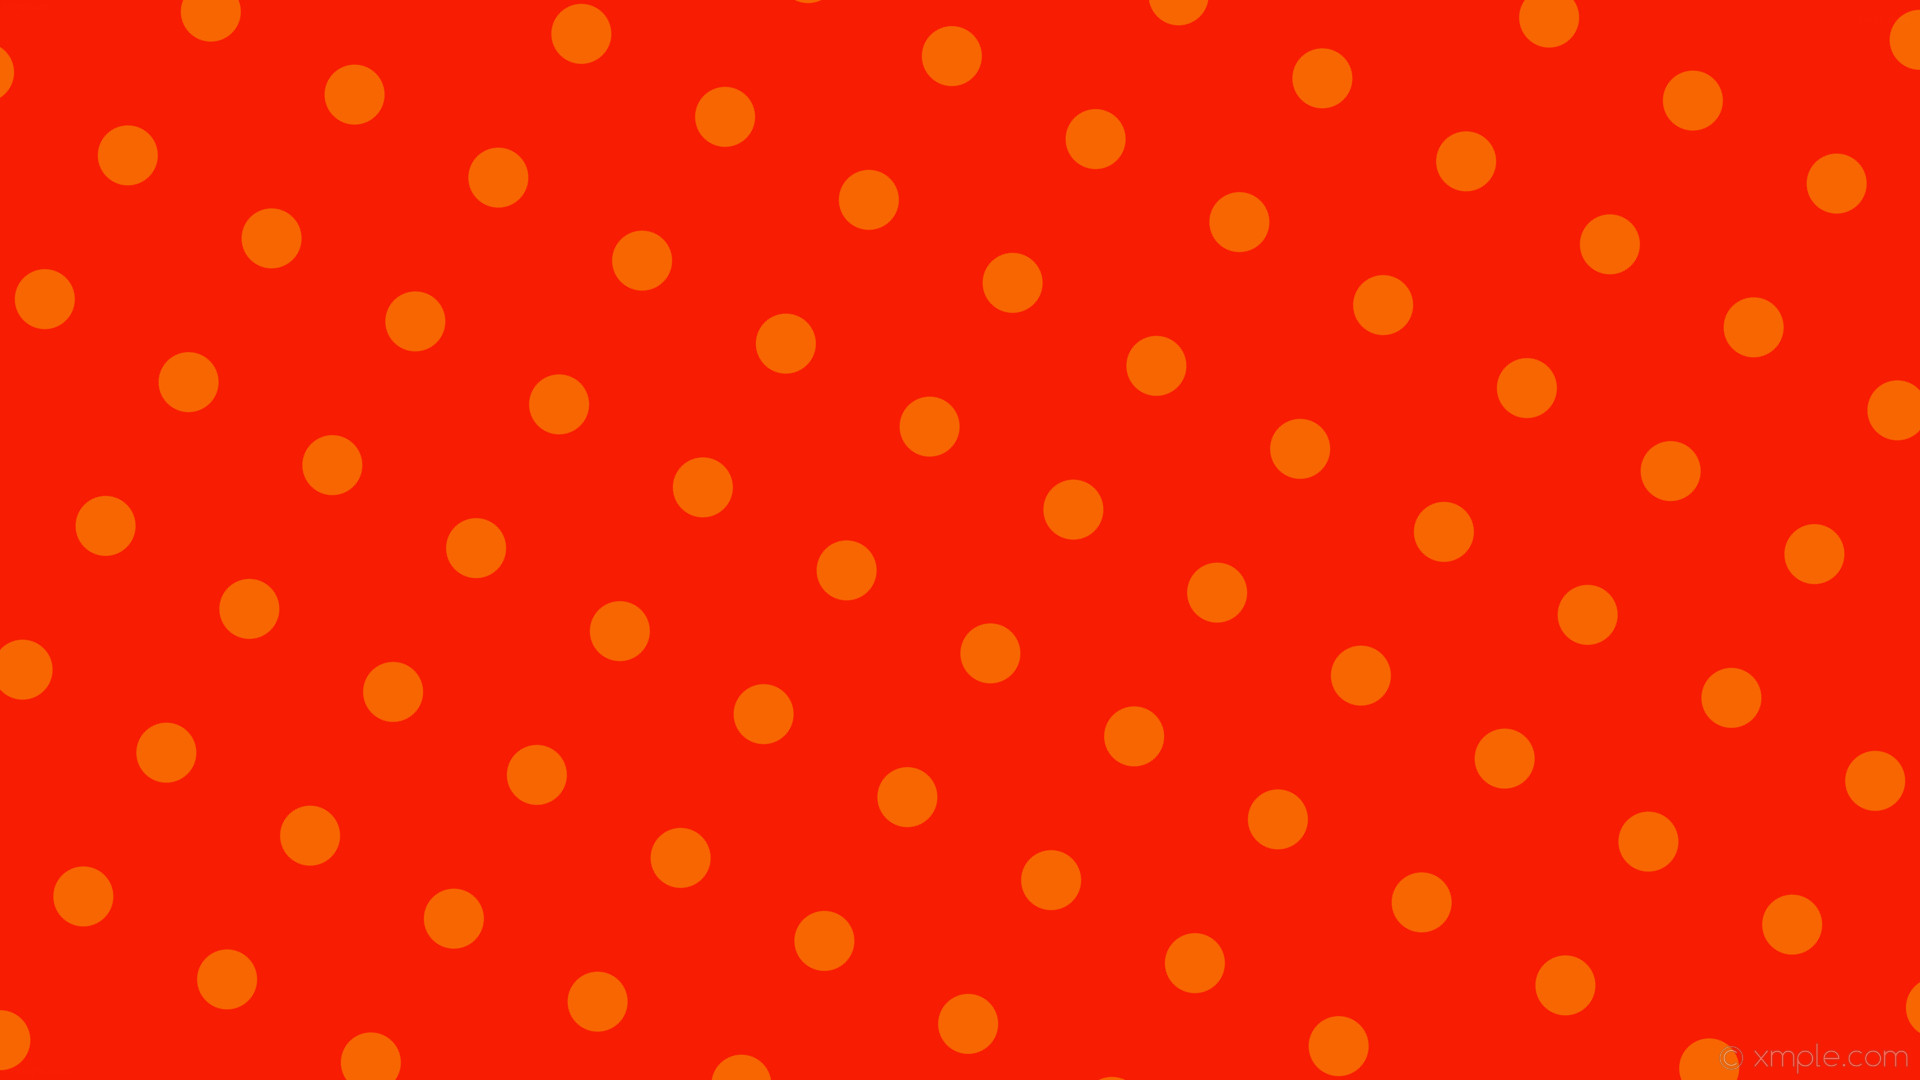 1920x1080 wallpaper orange polka dots spots red #f81c02 #f86602 150Â° 60px 166px